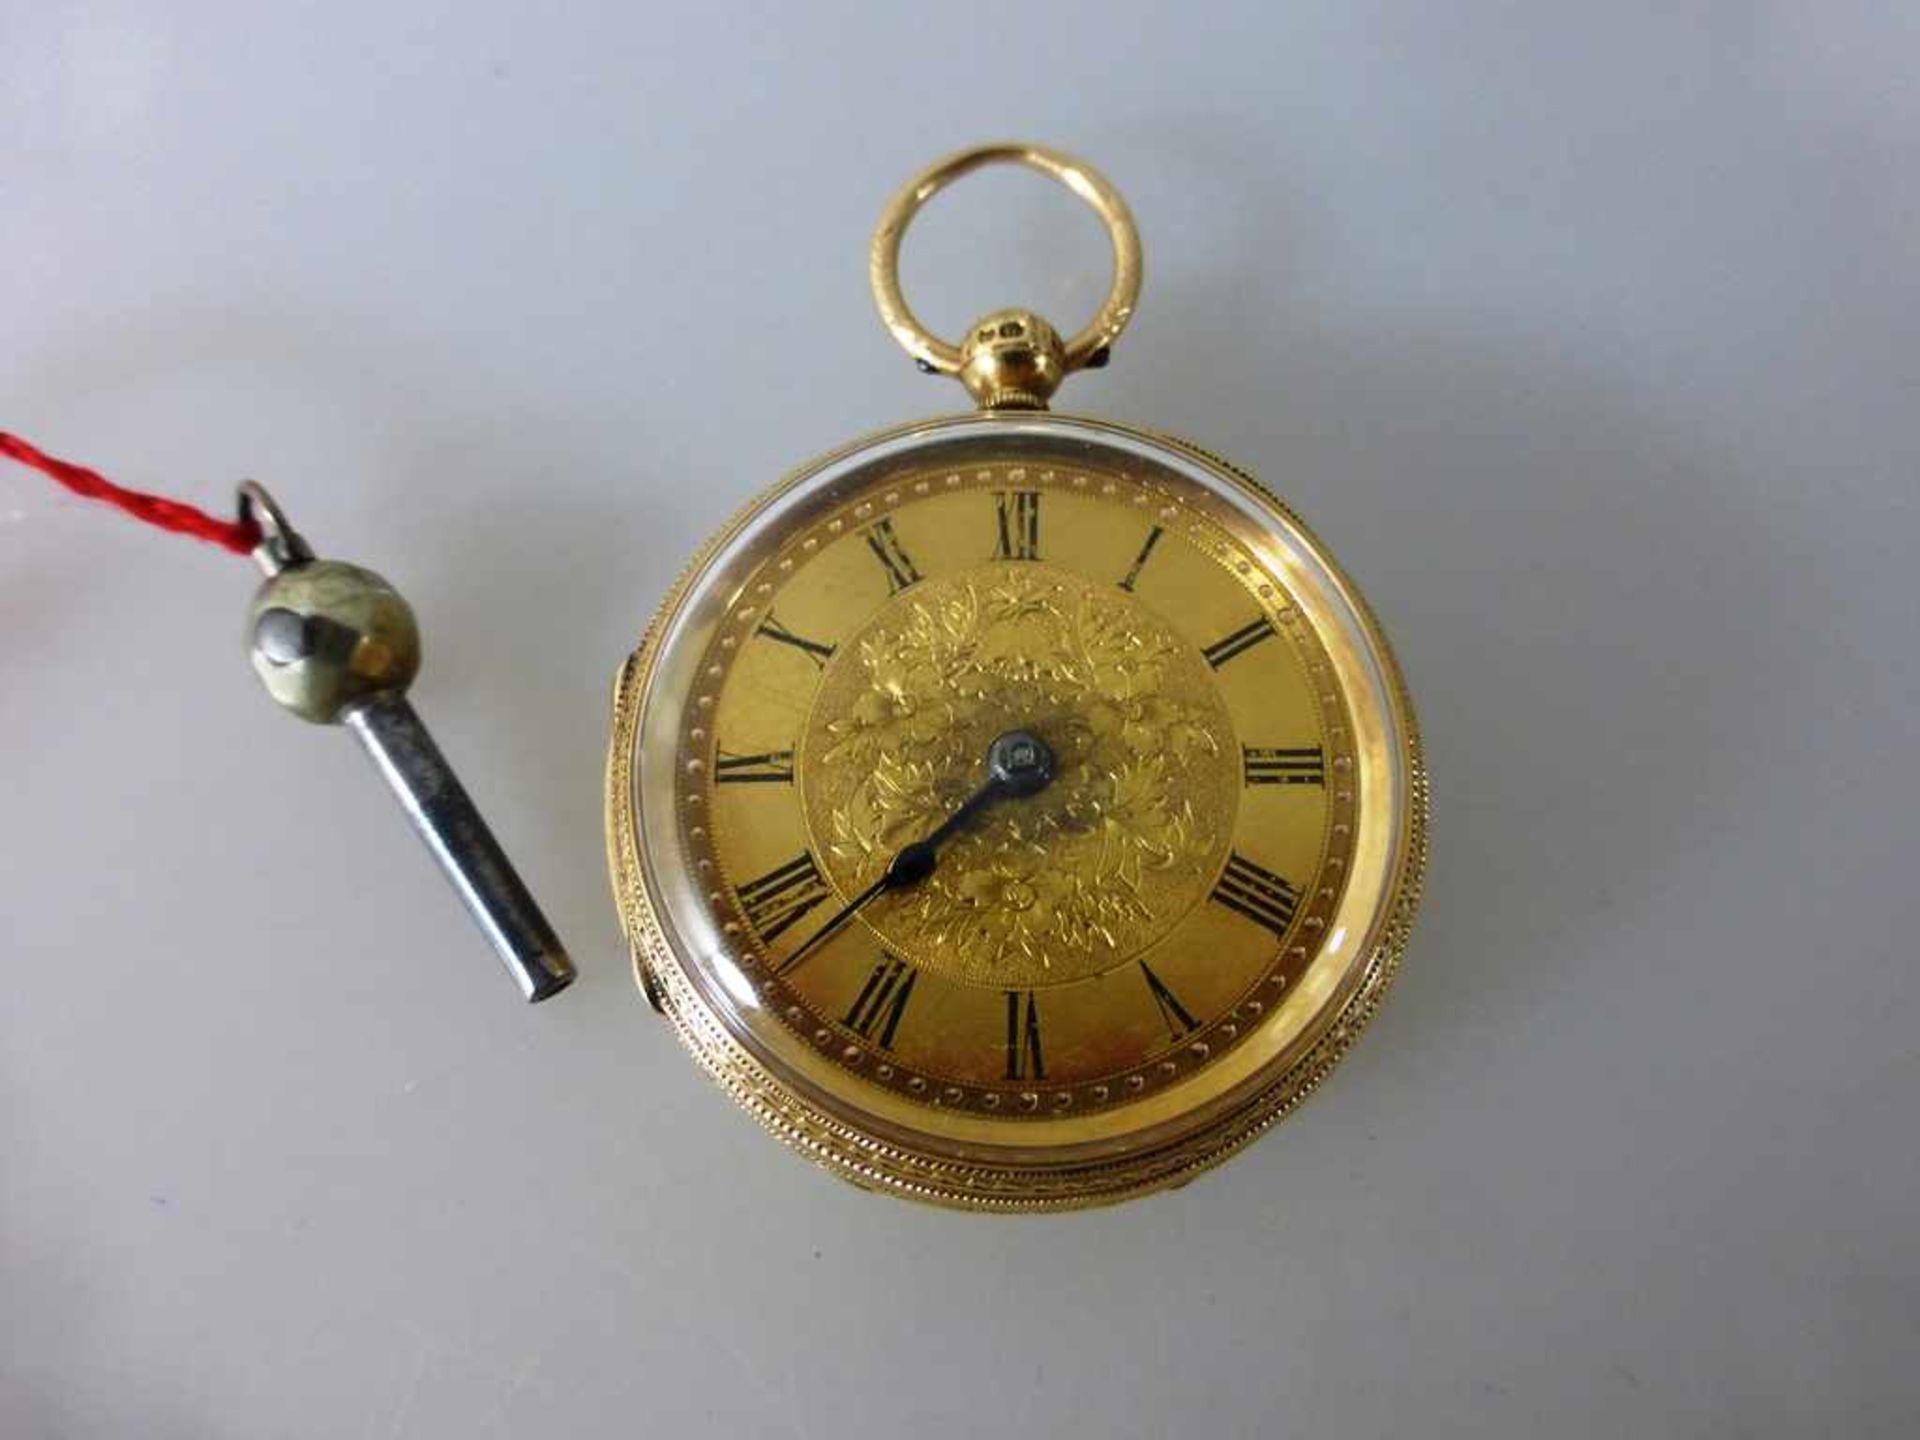 Schlüsseltaschenuhr, England um 1890, Gelbgold 750, fein verziert, num. 16582, d. 40,5mm,53,5g.,